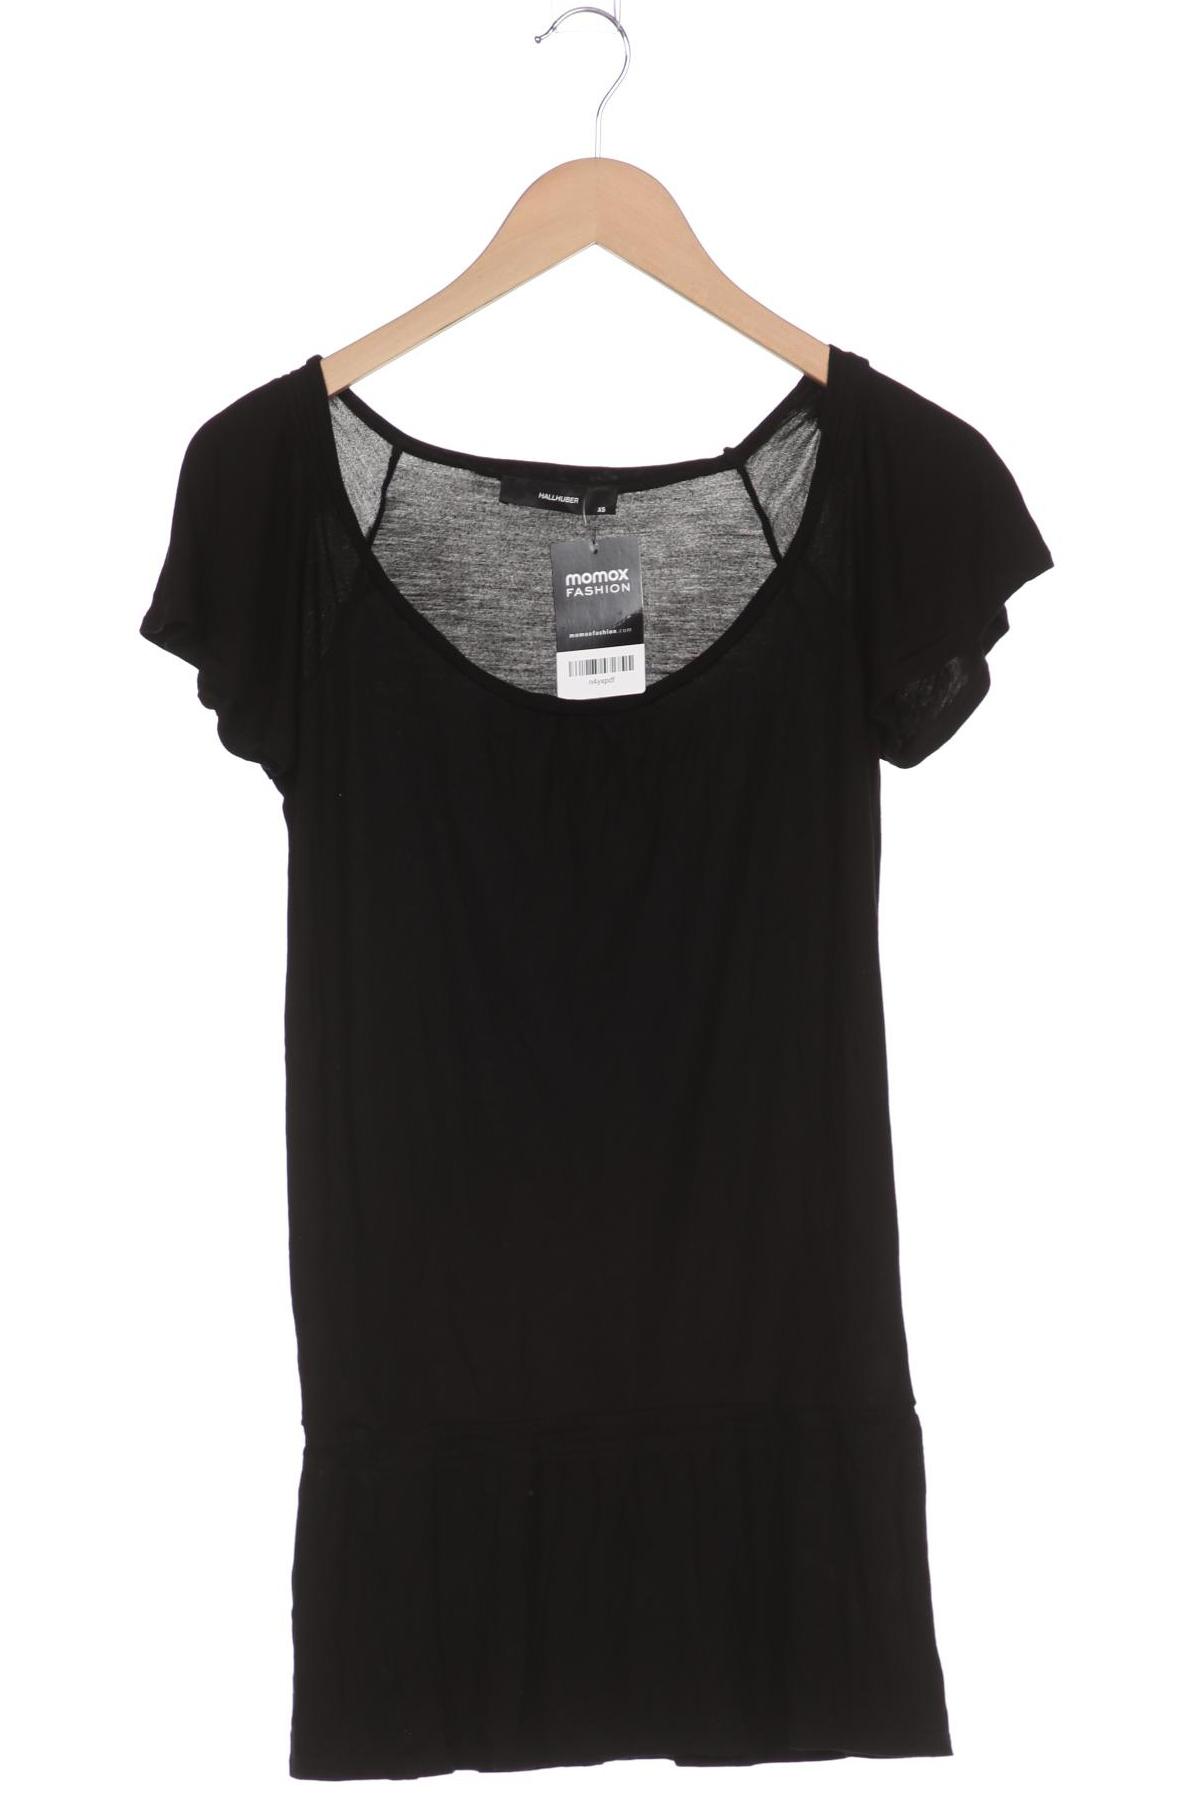 Hallhuber Damen T-Shirt, schwarz, Gr. 34 von Hallhuber